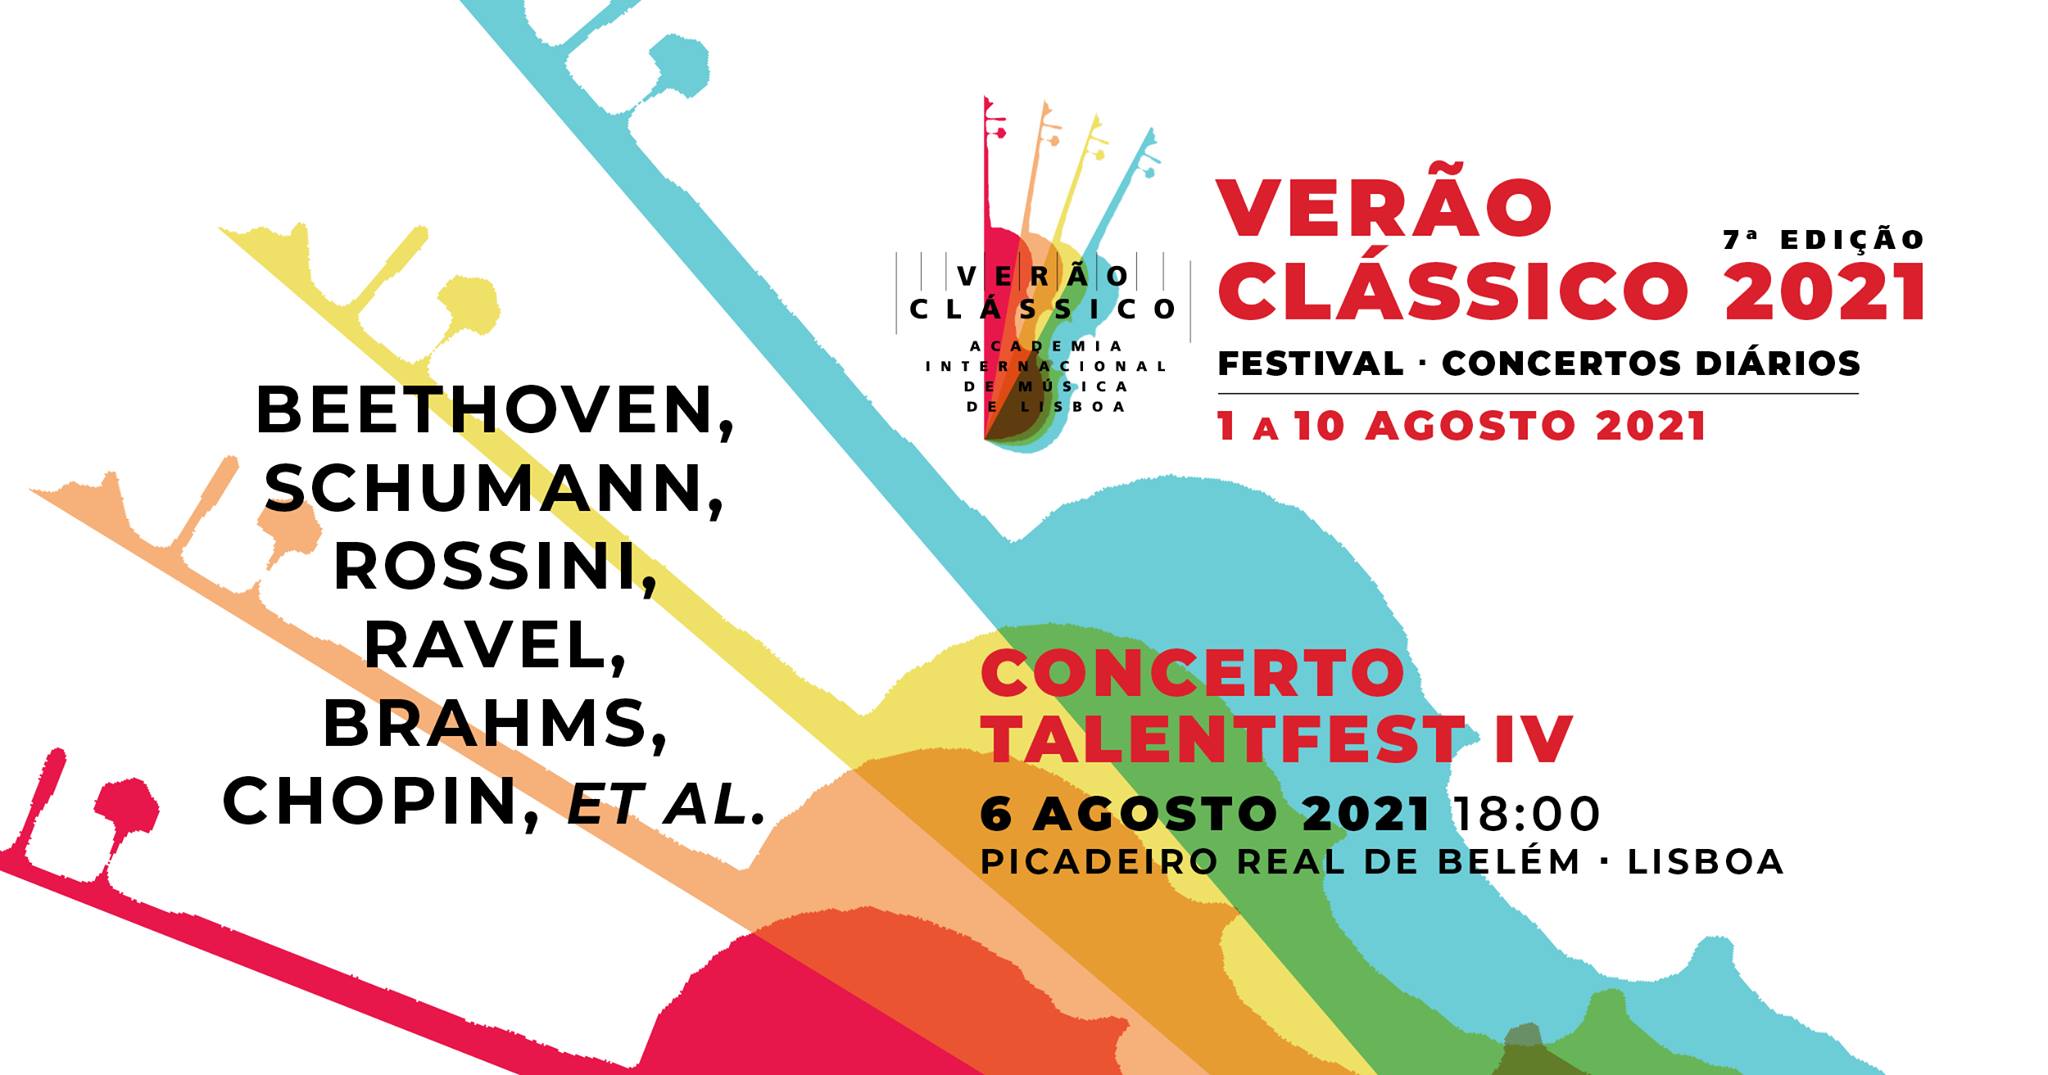 Concerto TalentFest IV - VERÃO CLÁSSICO 2021